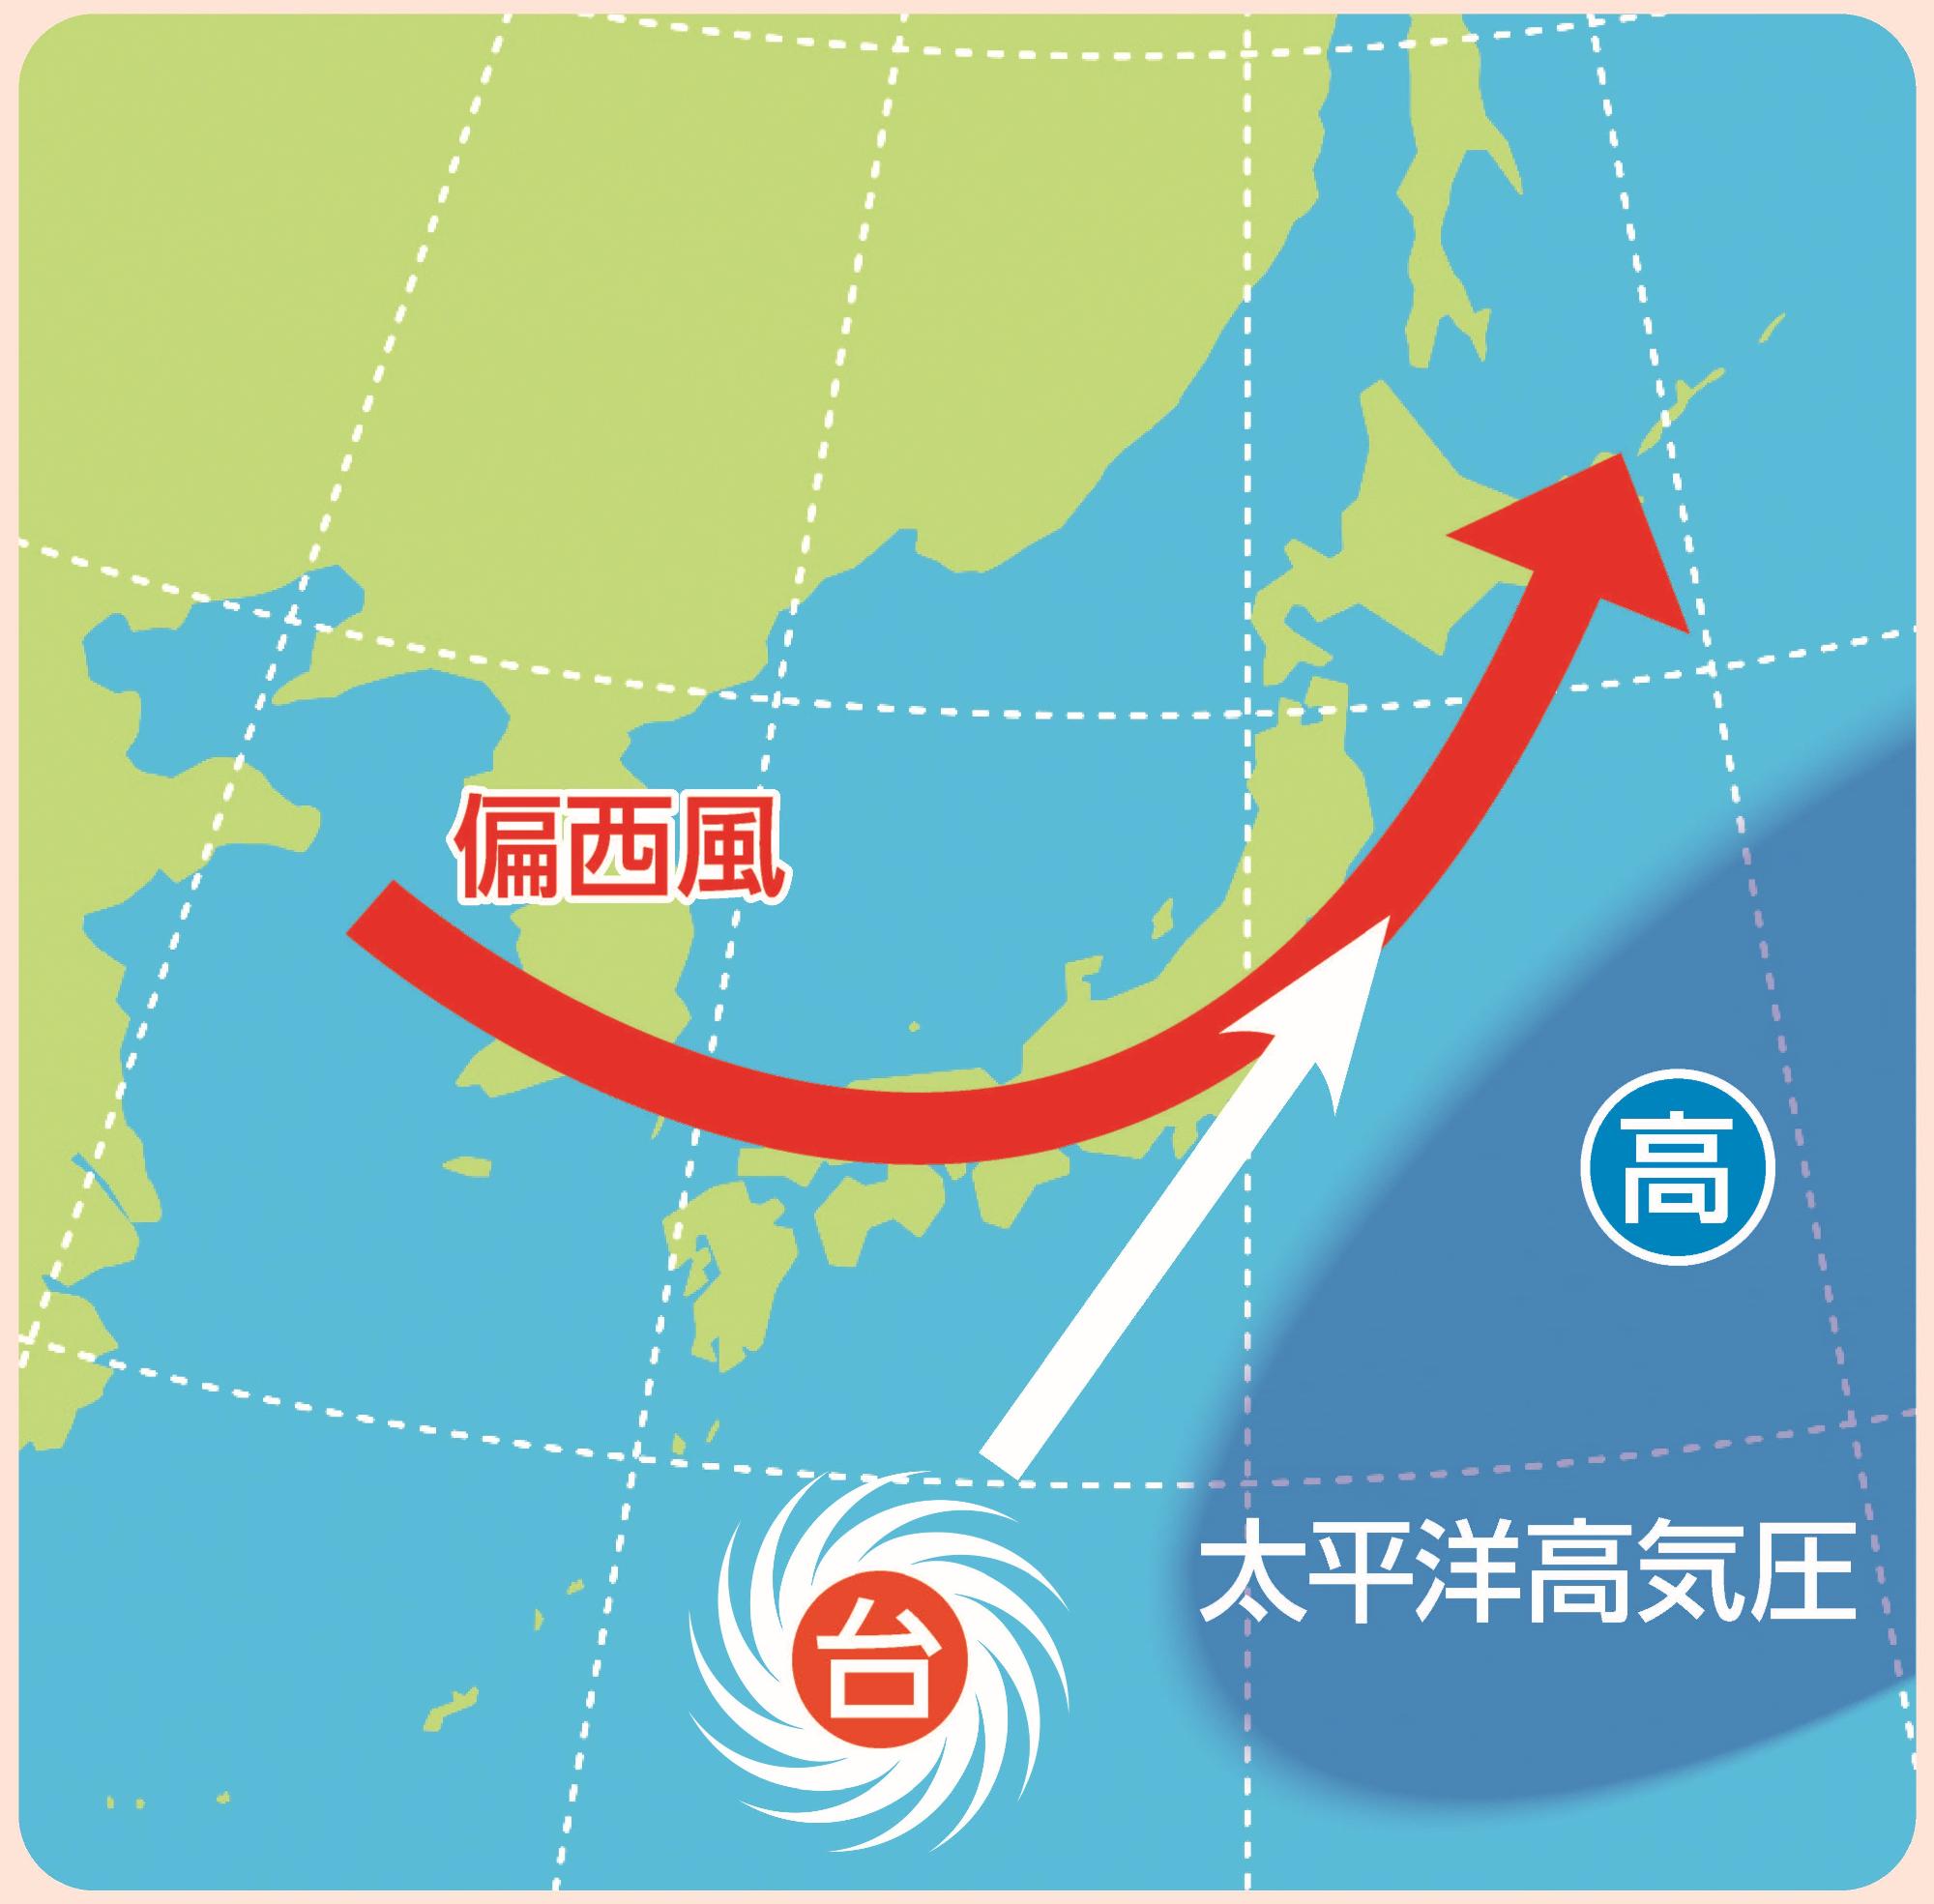 秋の台風の特徴を示した天気図。太平洋高気圧が太平洋上へ移動し、偏西風が日本列島の上を通過するため、台風は偏西風に乗って日本列島の上を北上している。